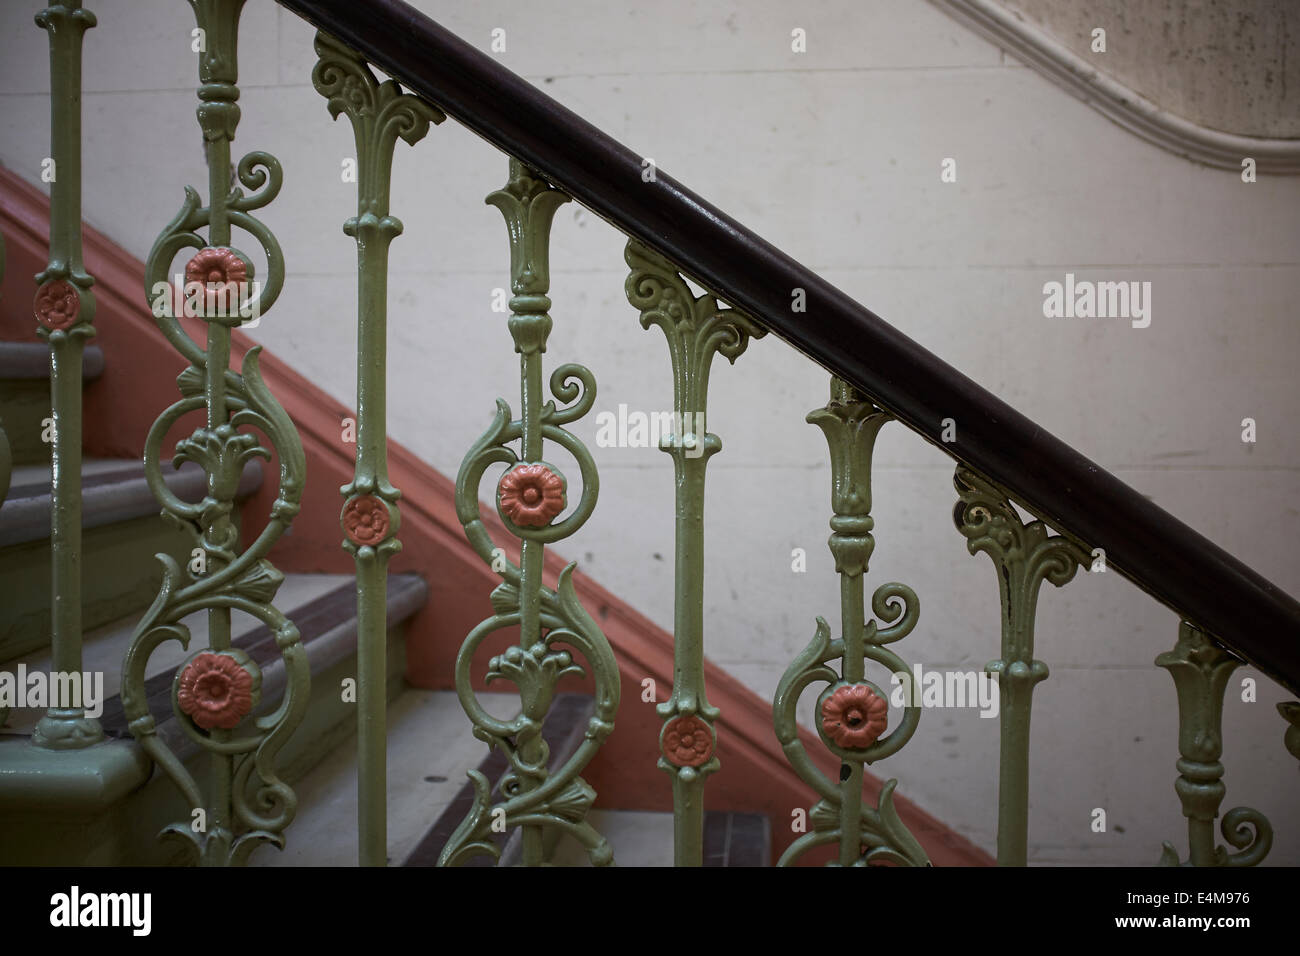 Close up detail de vieux métal broches d'escalier décoratif Banque D'Images